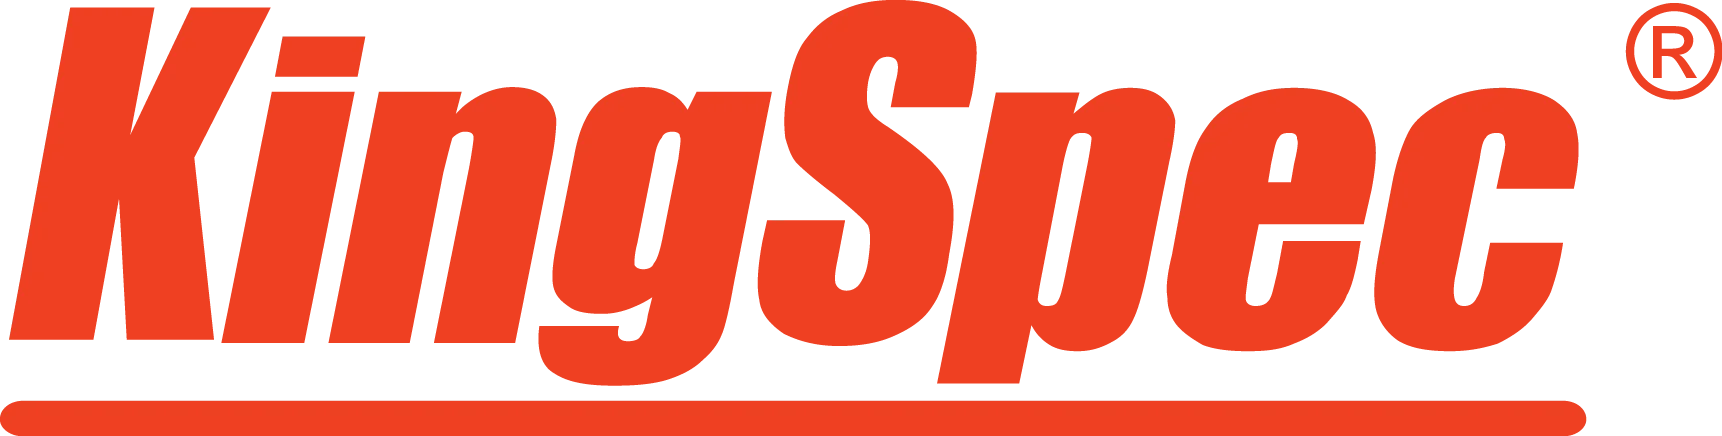 KINGSPEC логотип. KINGSPEC SSD 120gb. KINGSPEC логотип неподрезанный. KINGSPEC p3-128 rm1135. Кингспек